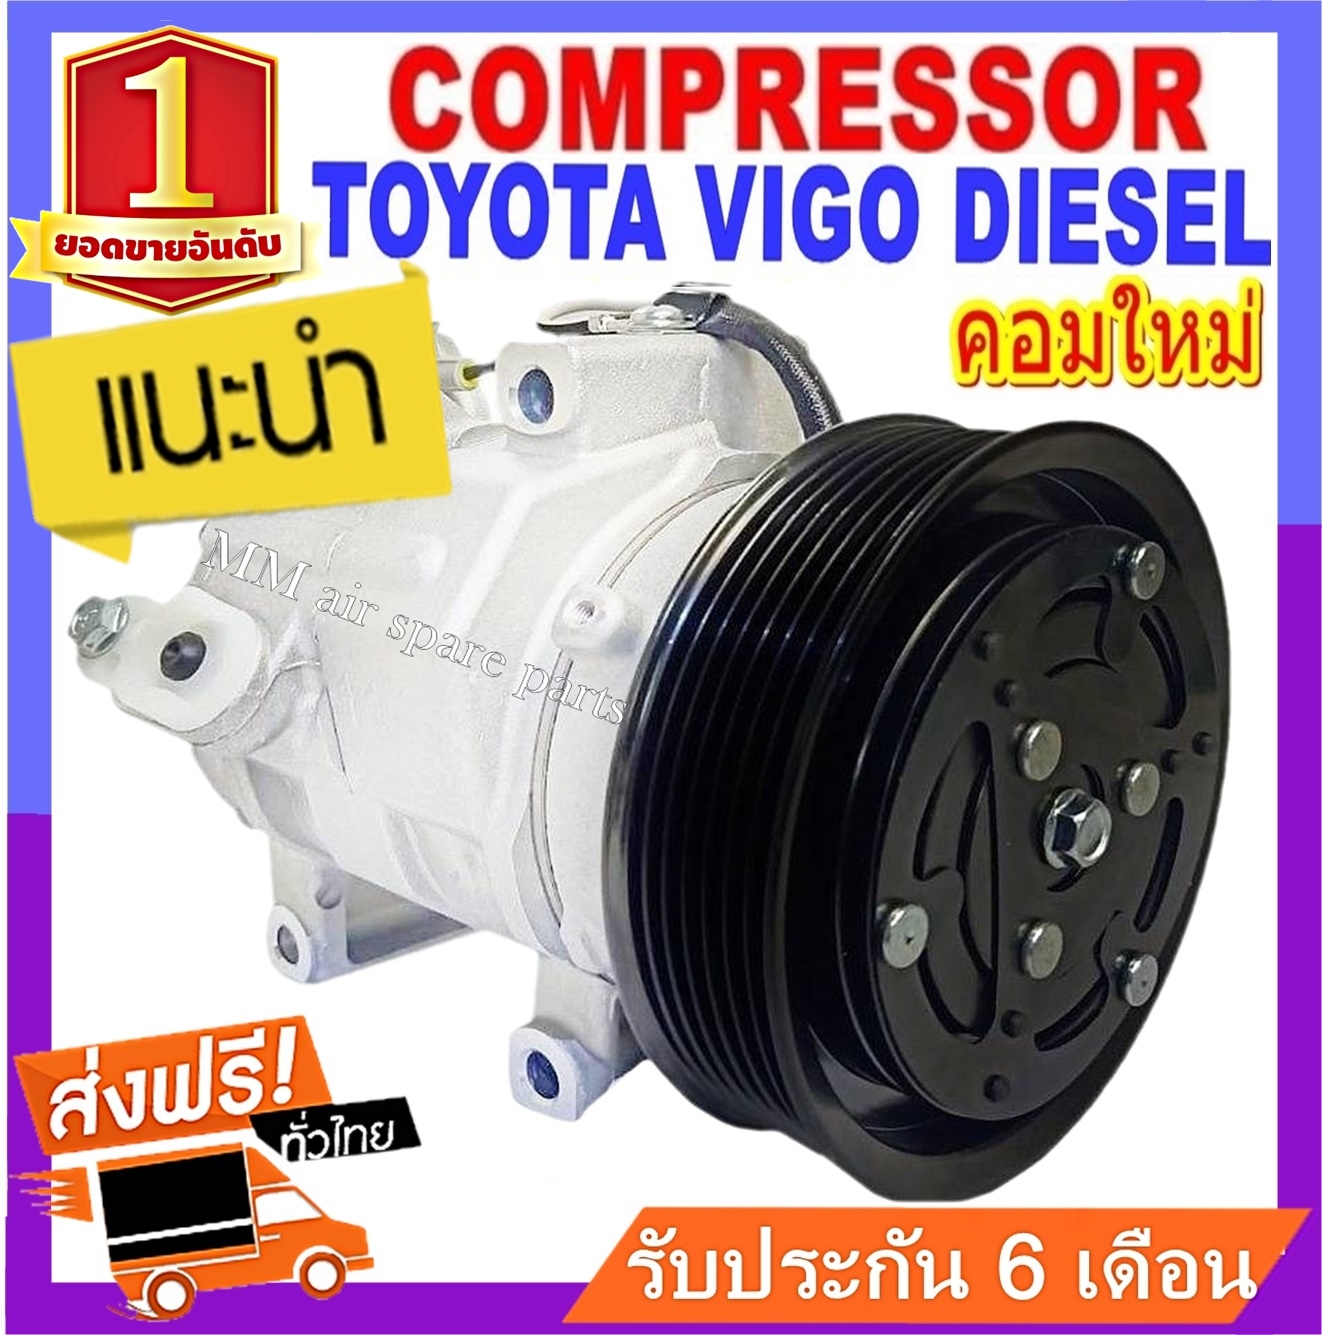 ของใหม่!! คอมแอร์ โตโยต้า วีโก้ ดีเซล,วีโก้ แชมป์ ดีเซล : Compressor TOYOTA Vigo Diesel,Vigo Champ Diesel สินค้าของใหม่100%